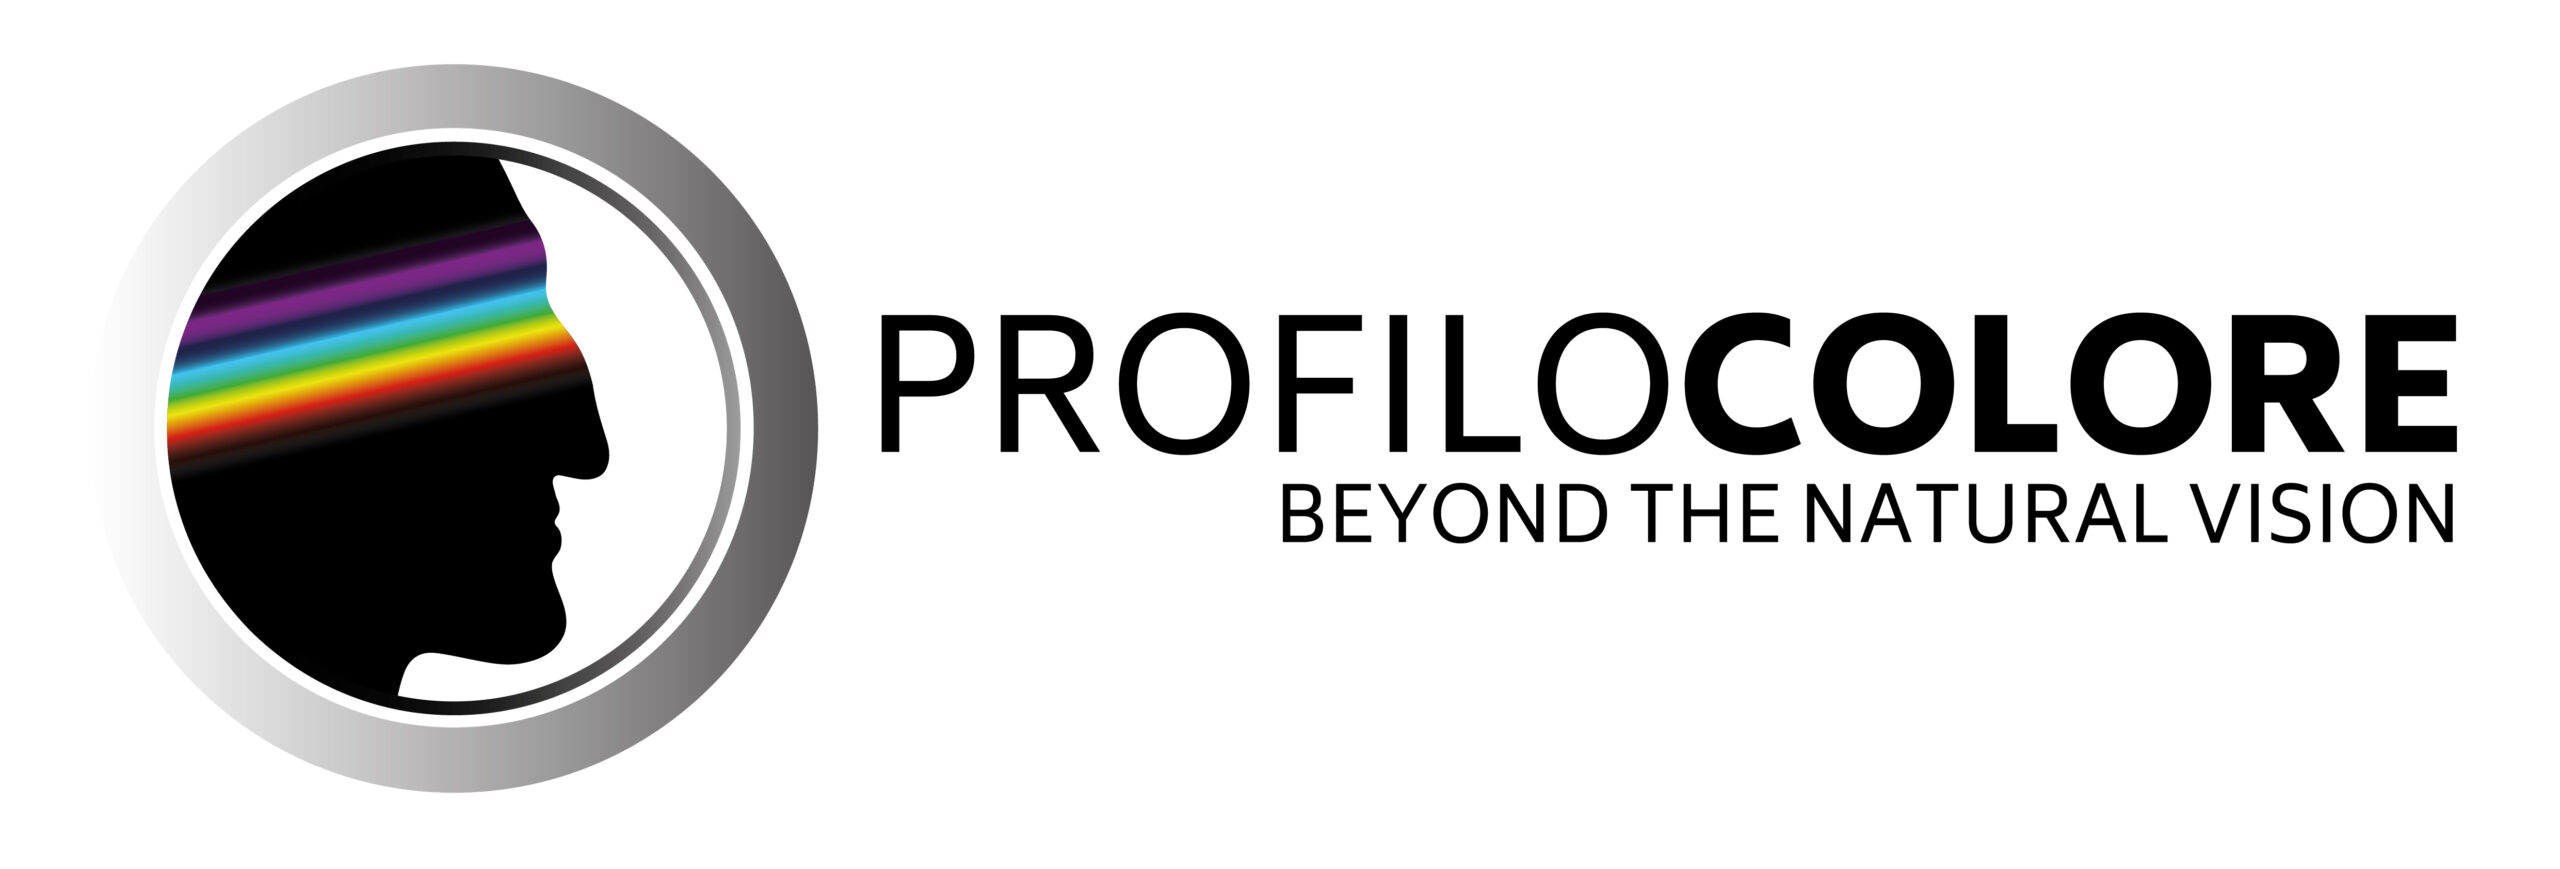 profilocolore_logo